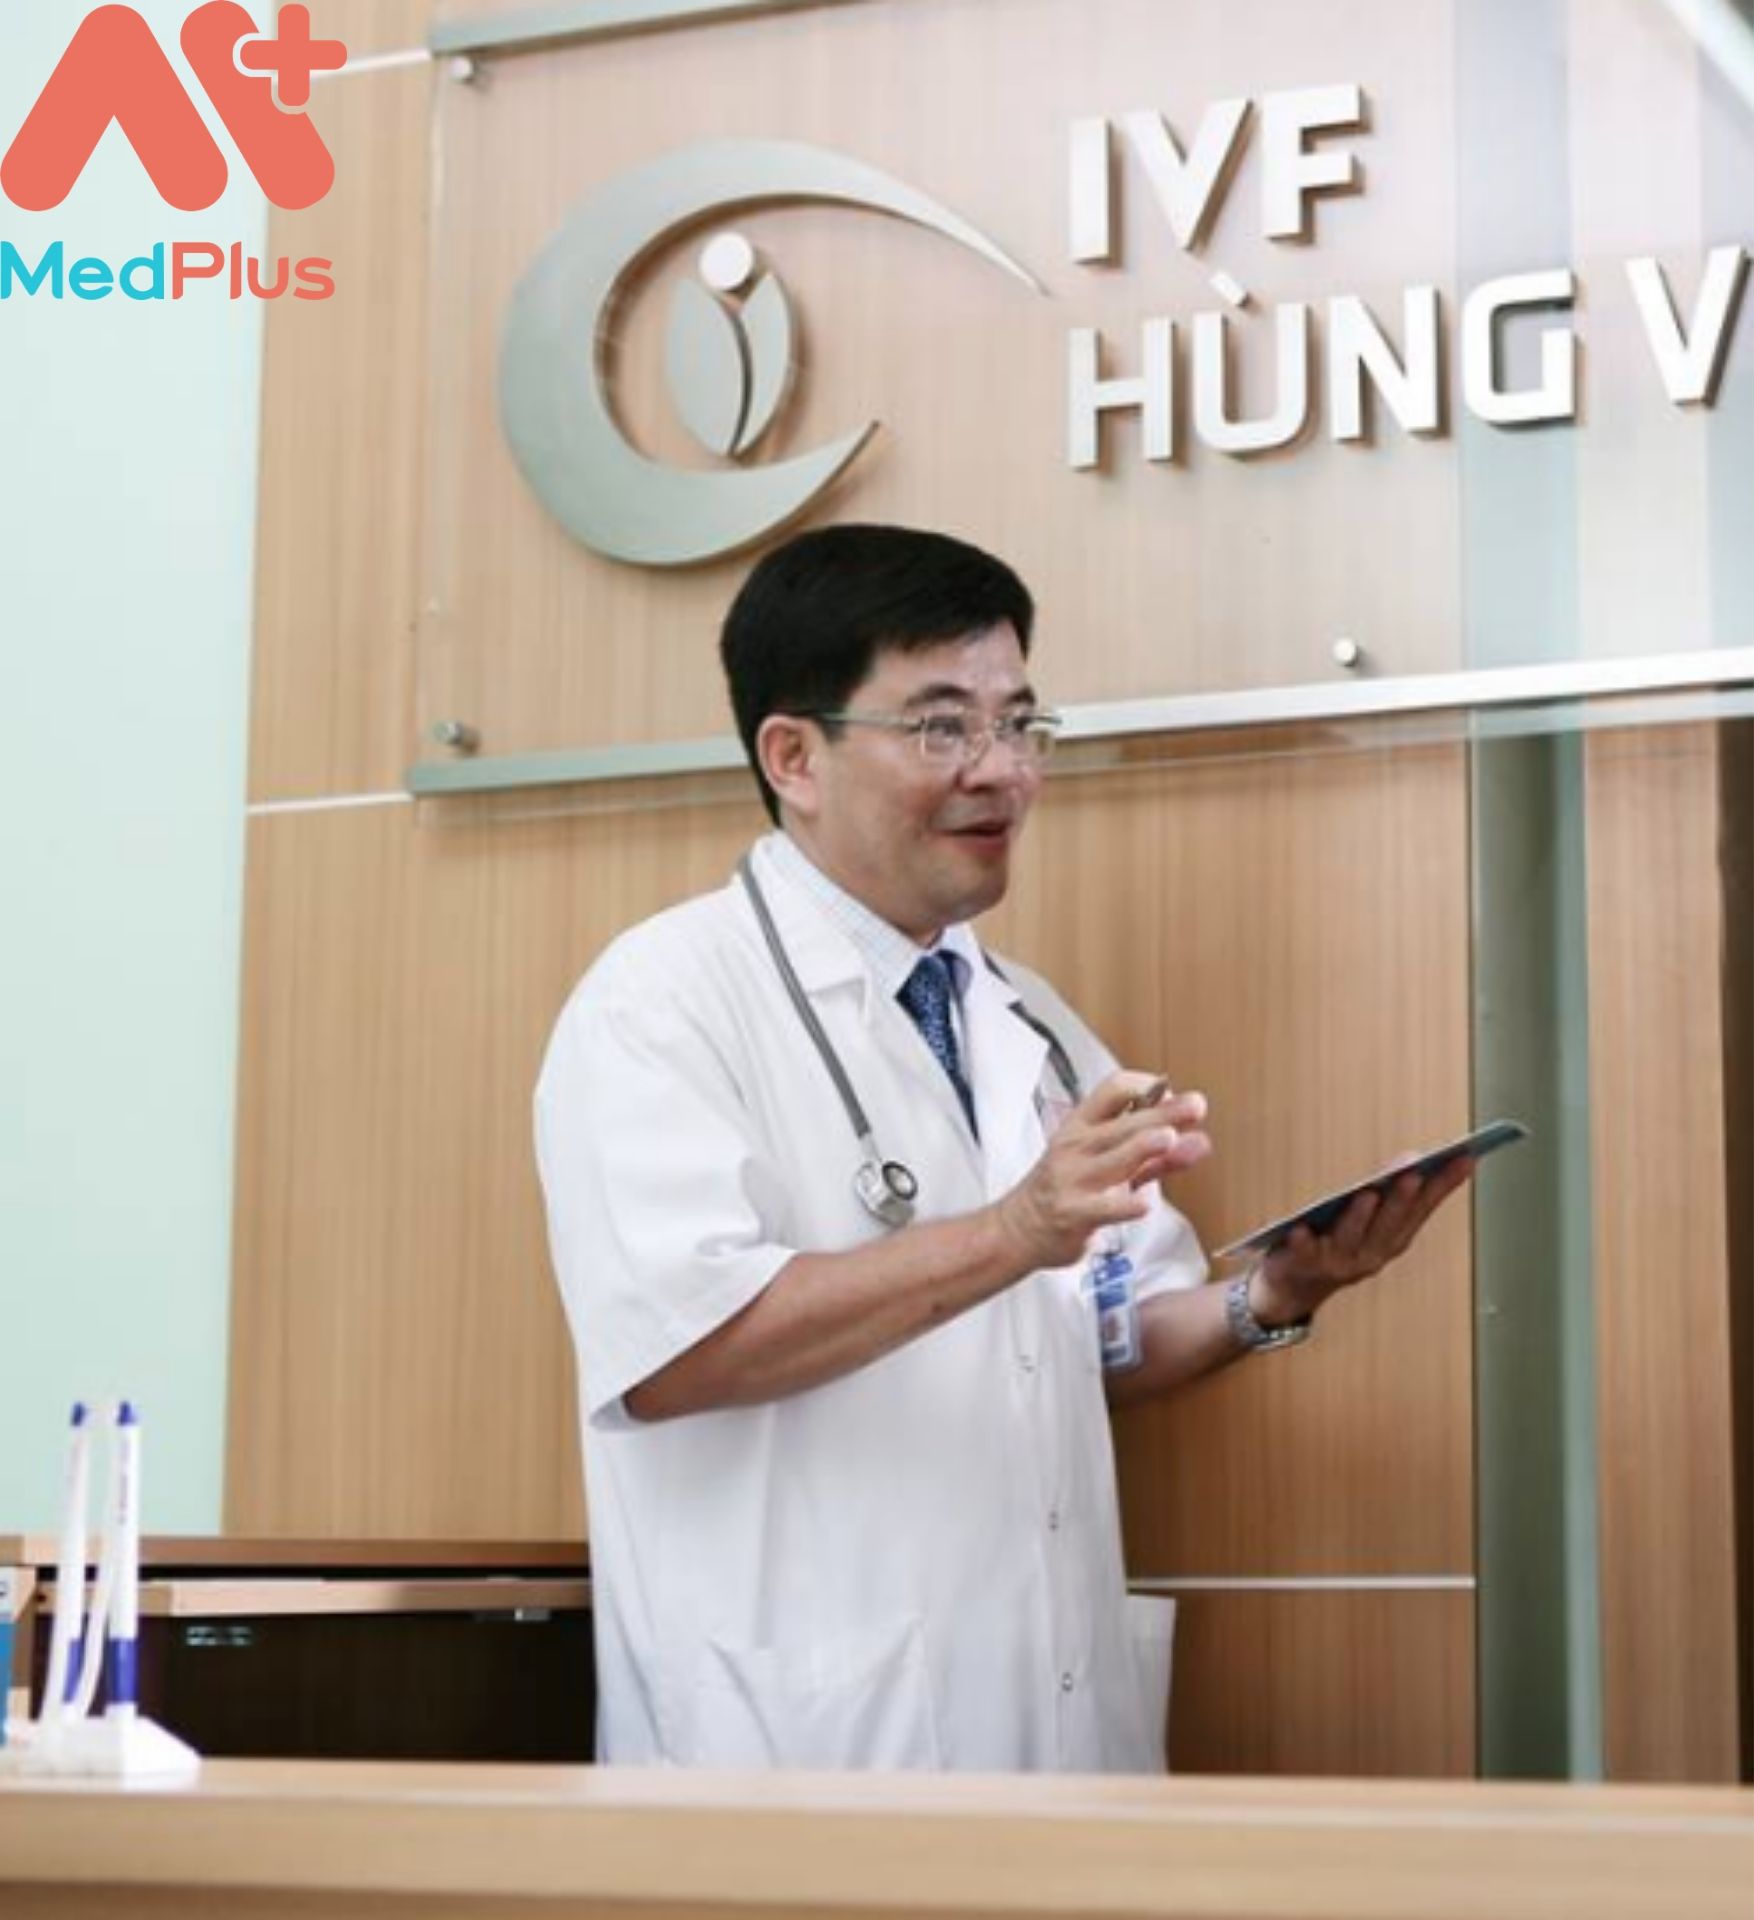 Ghé thăm phòng khám phụ khoa - hiếm muộn BS Thái Lộc - Medplus.vn